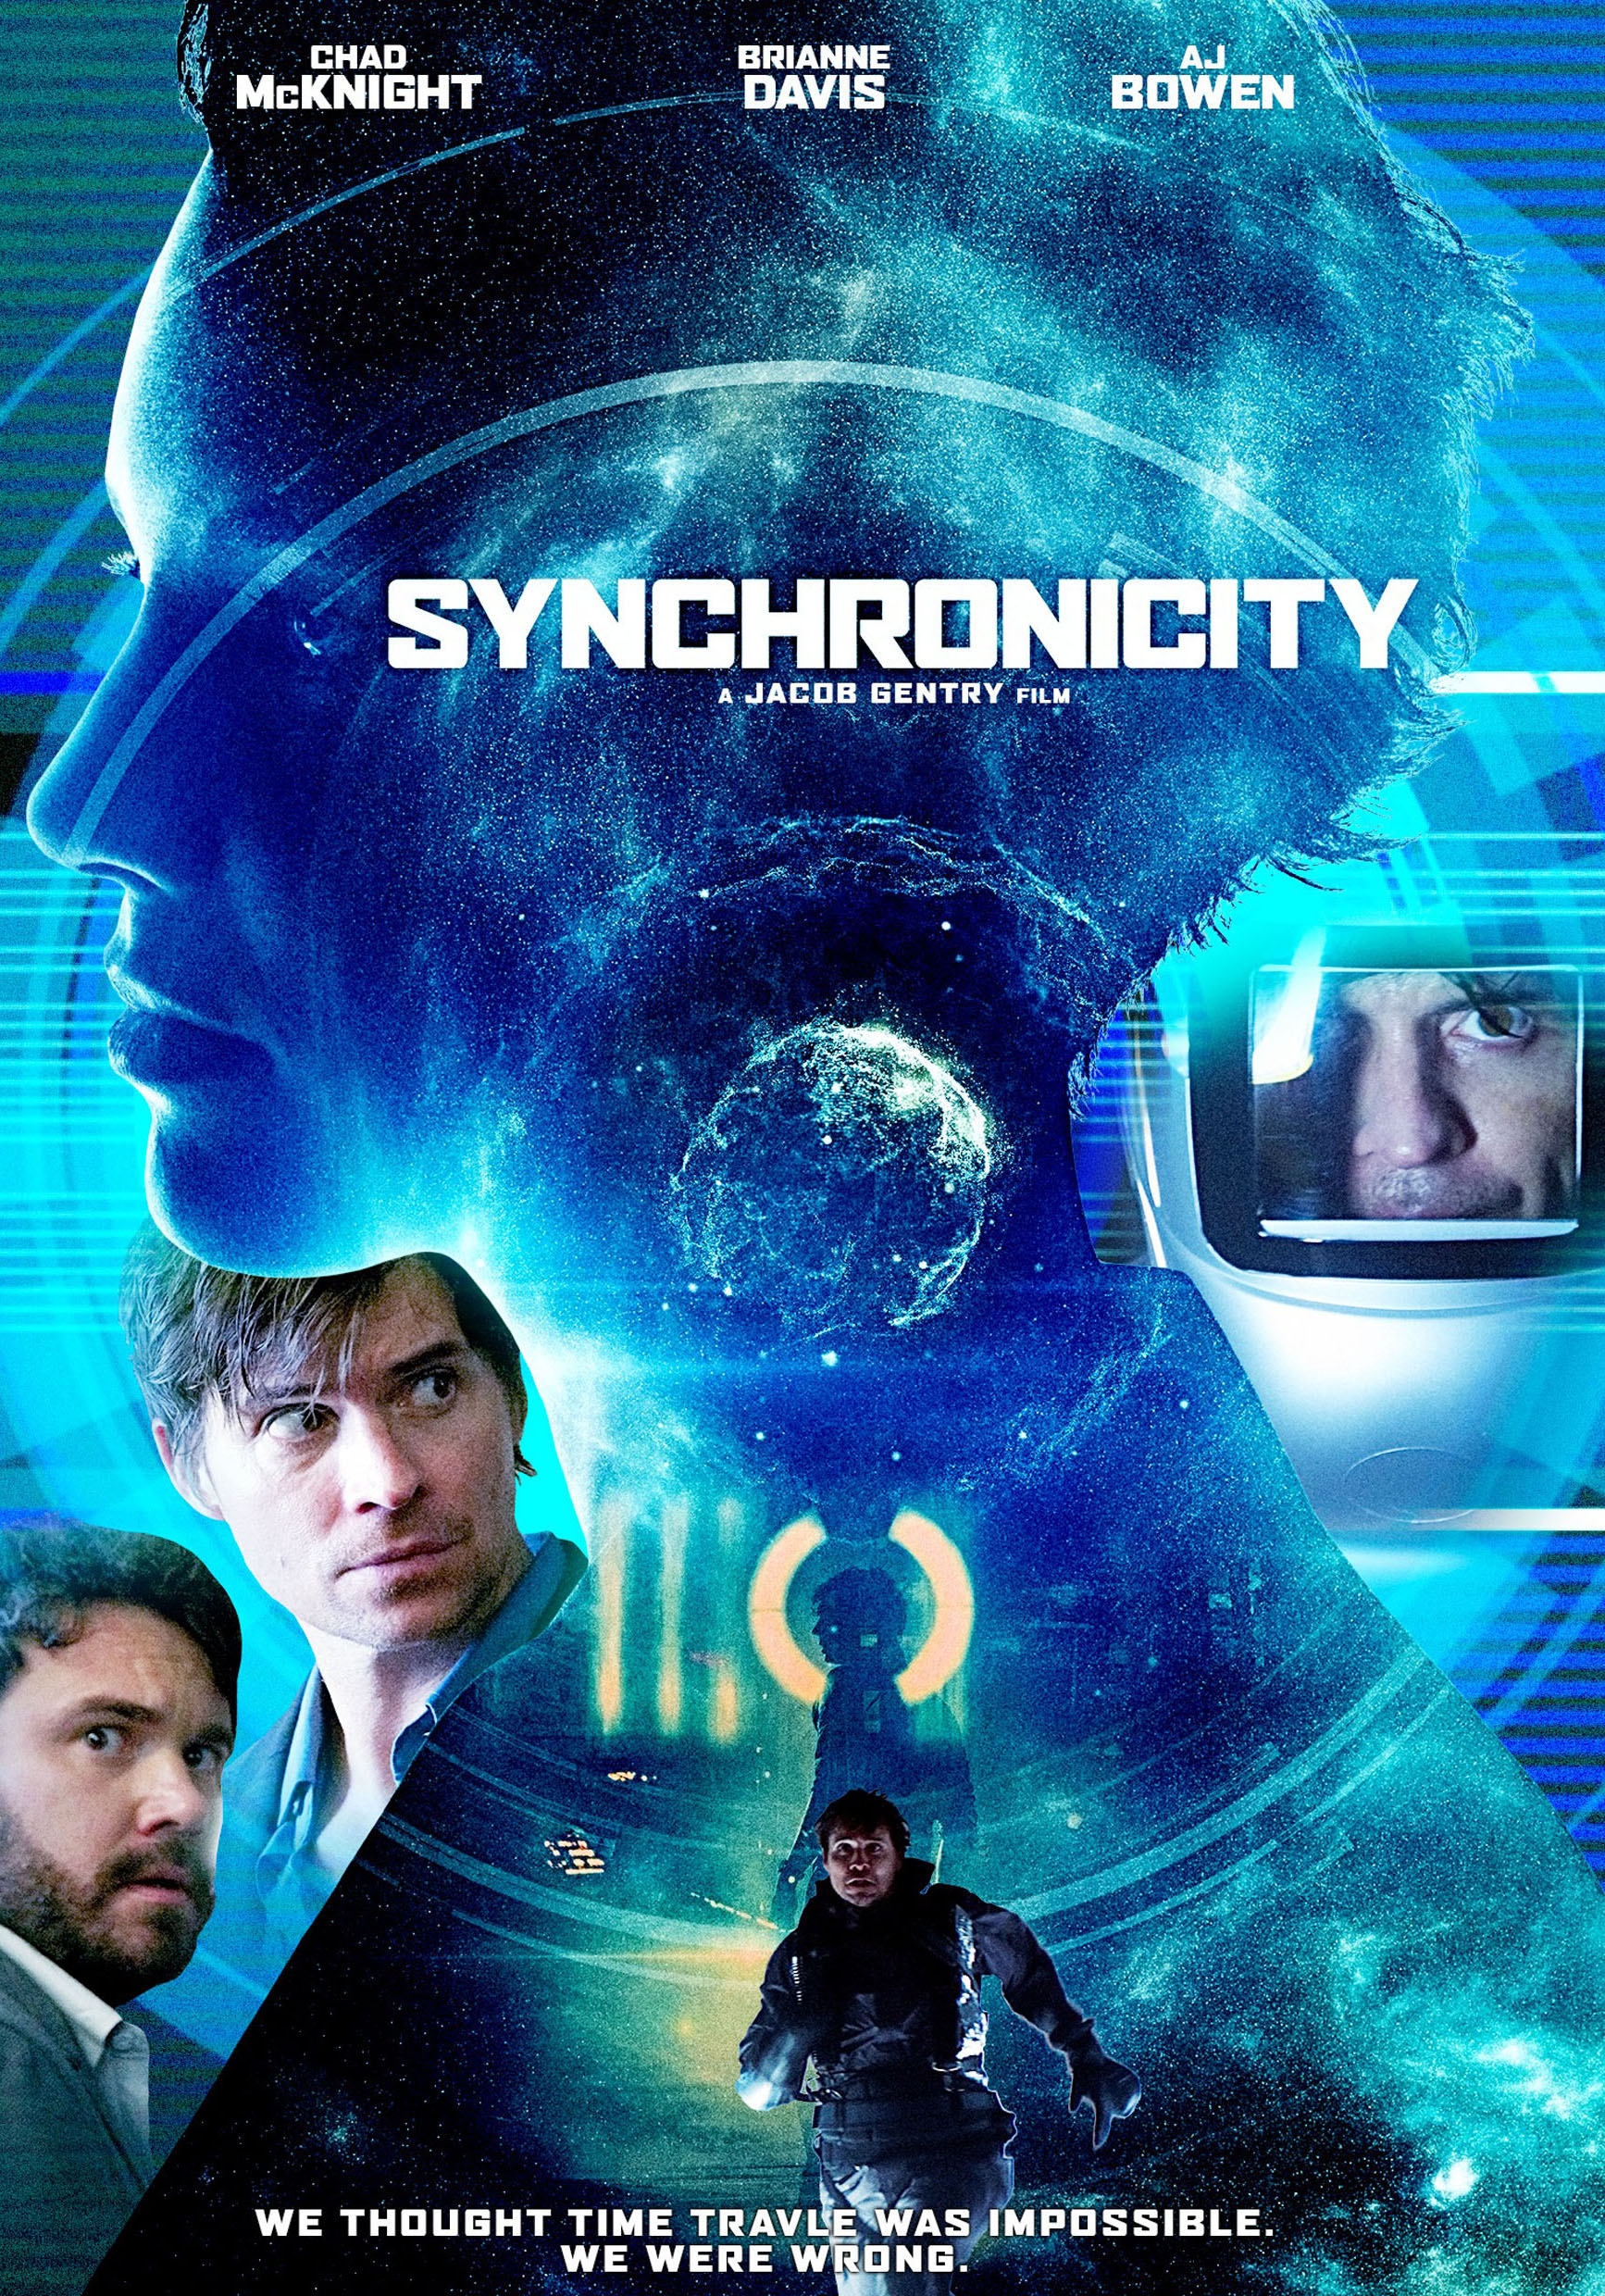 Synchronicity (2015)dvdplanetstorepk